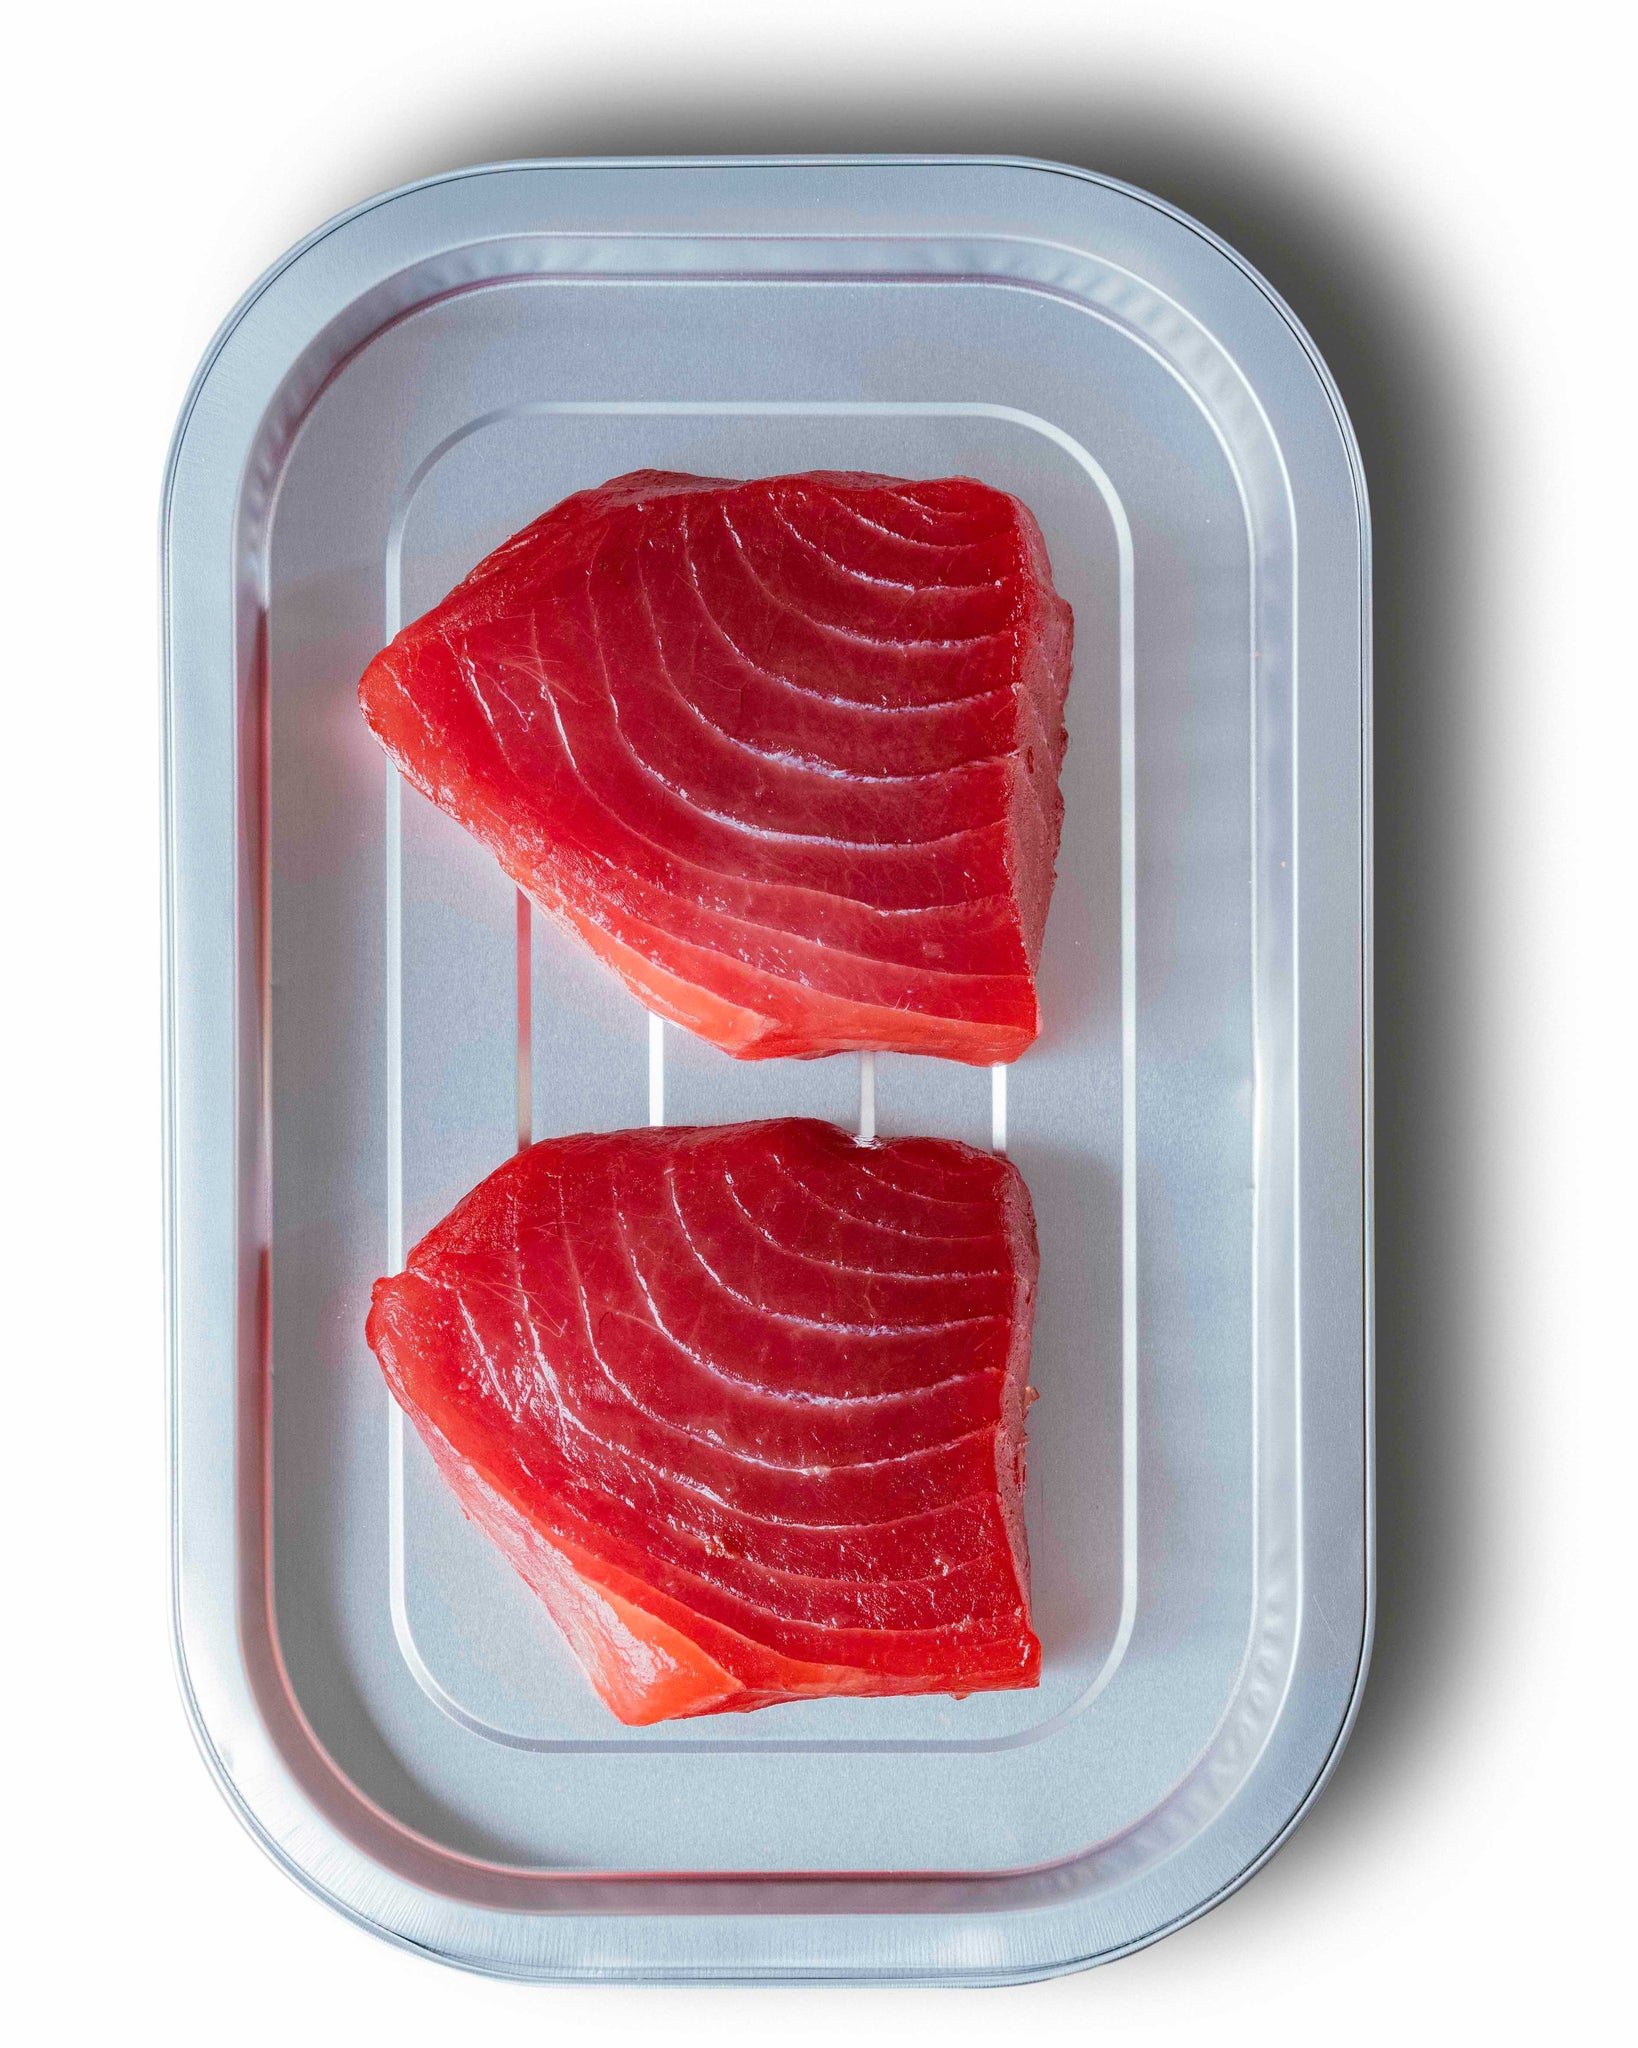 Yellowfin "Ahi" Tuna